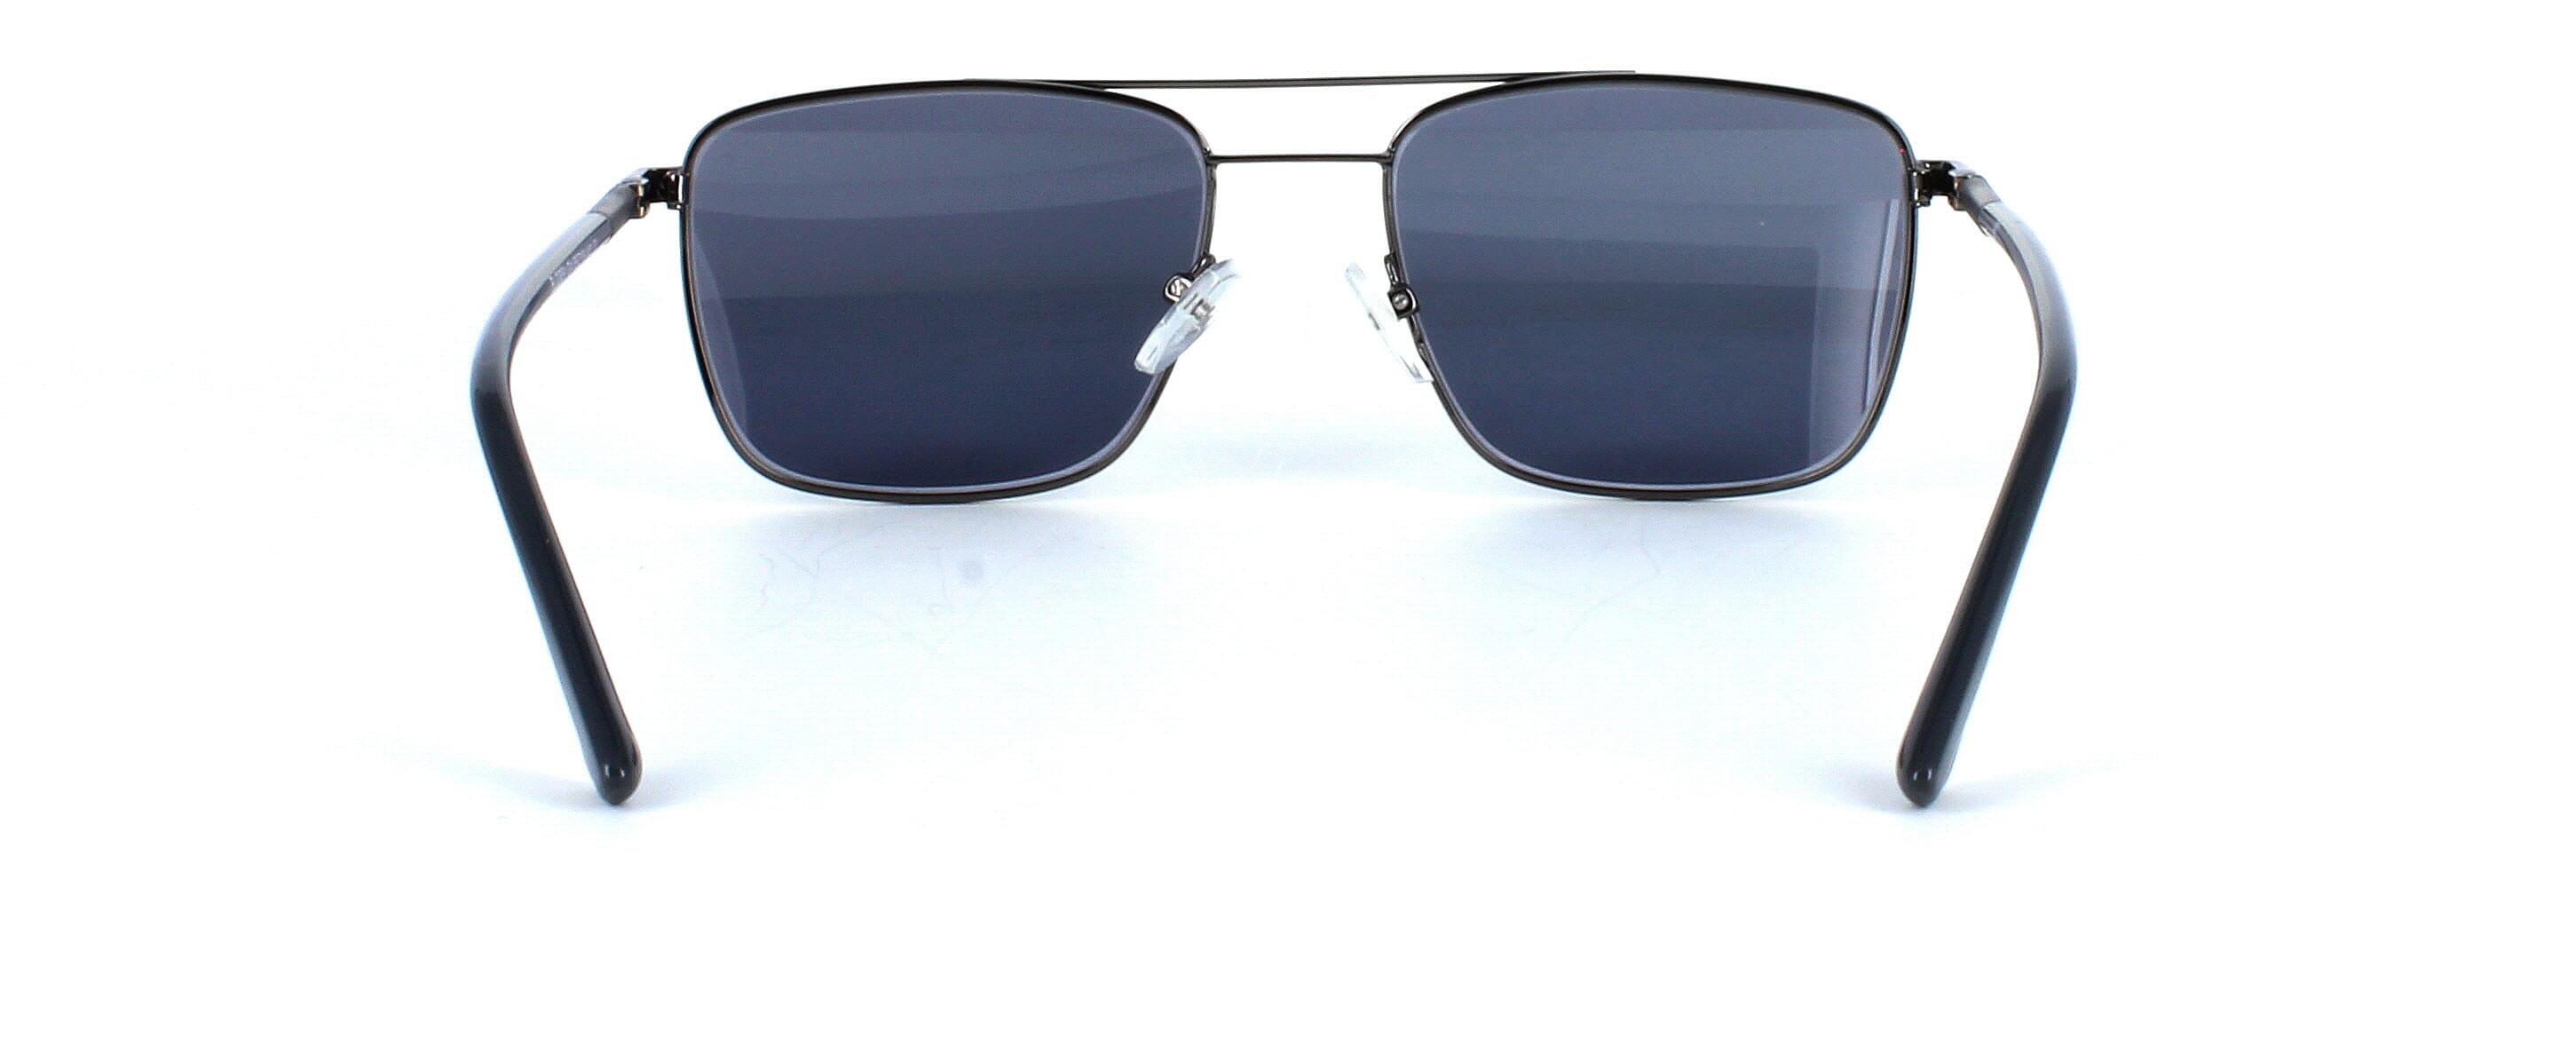 Seaford - Prescription Sunglasses in Gunmetal | Cheap Glasses Online ...